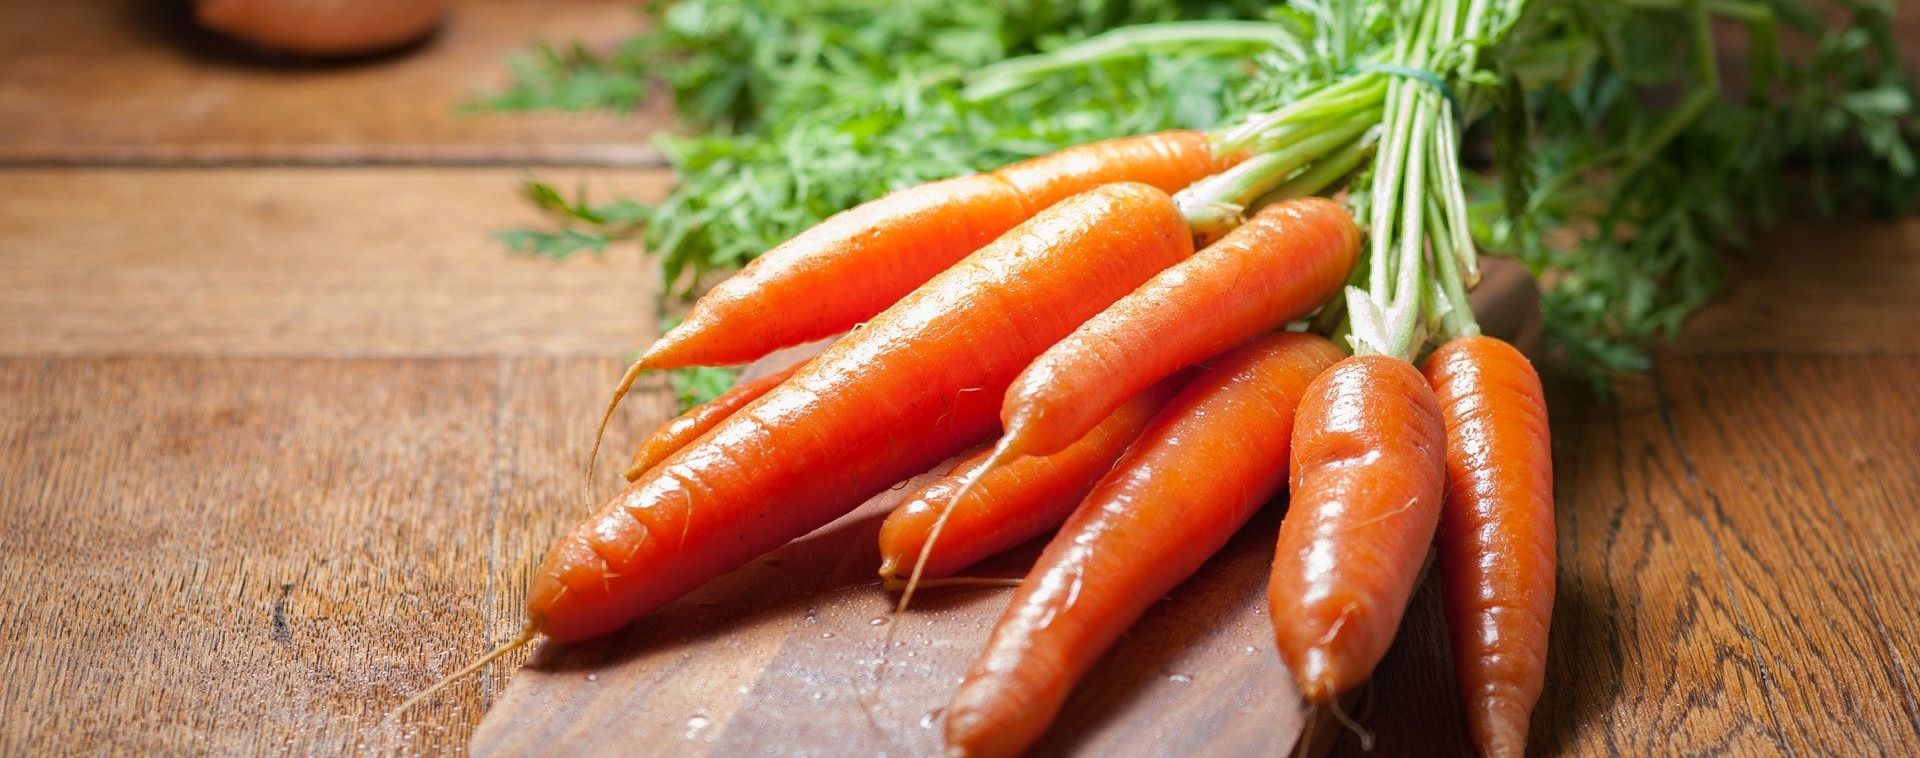 Ціни вже втричі вищі за торішні: в Україні продовжує дорожчати морква